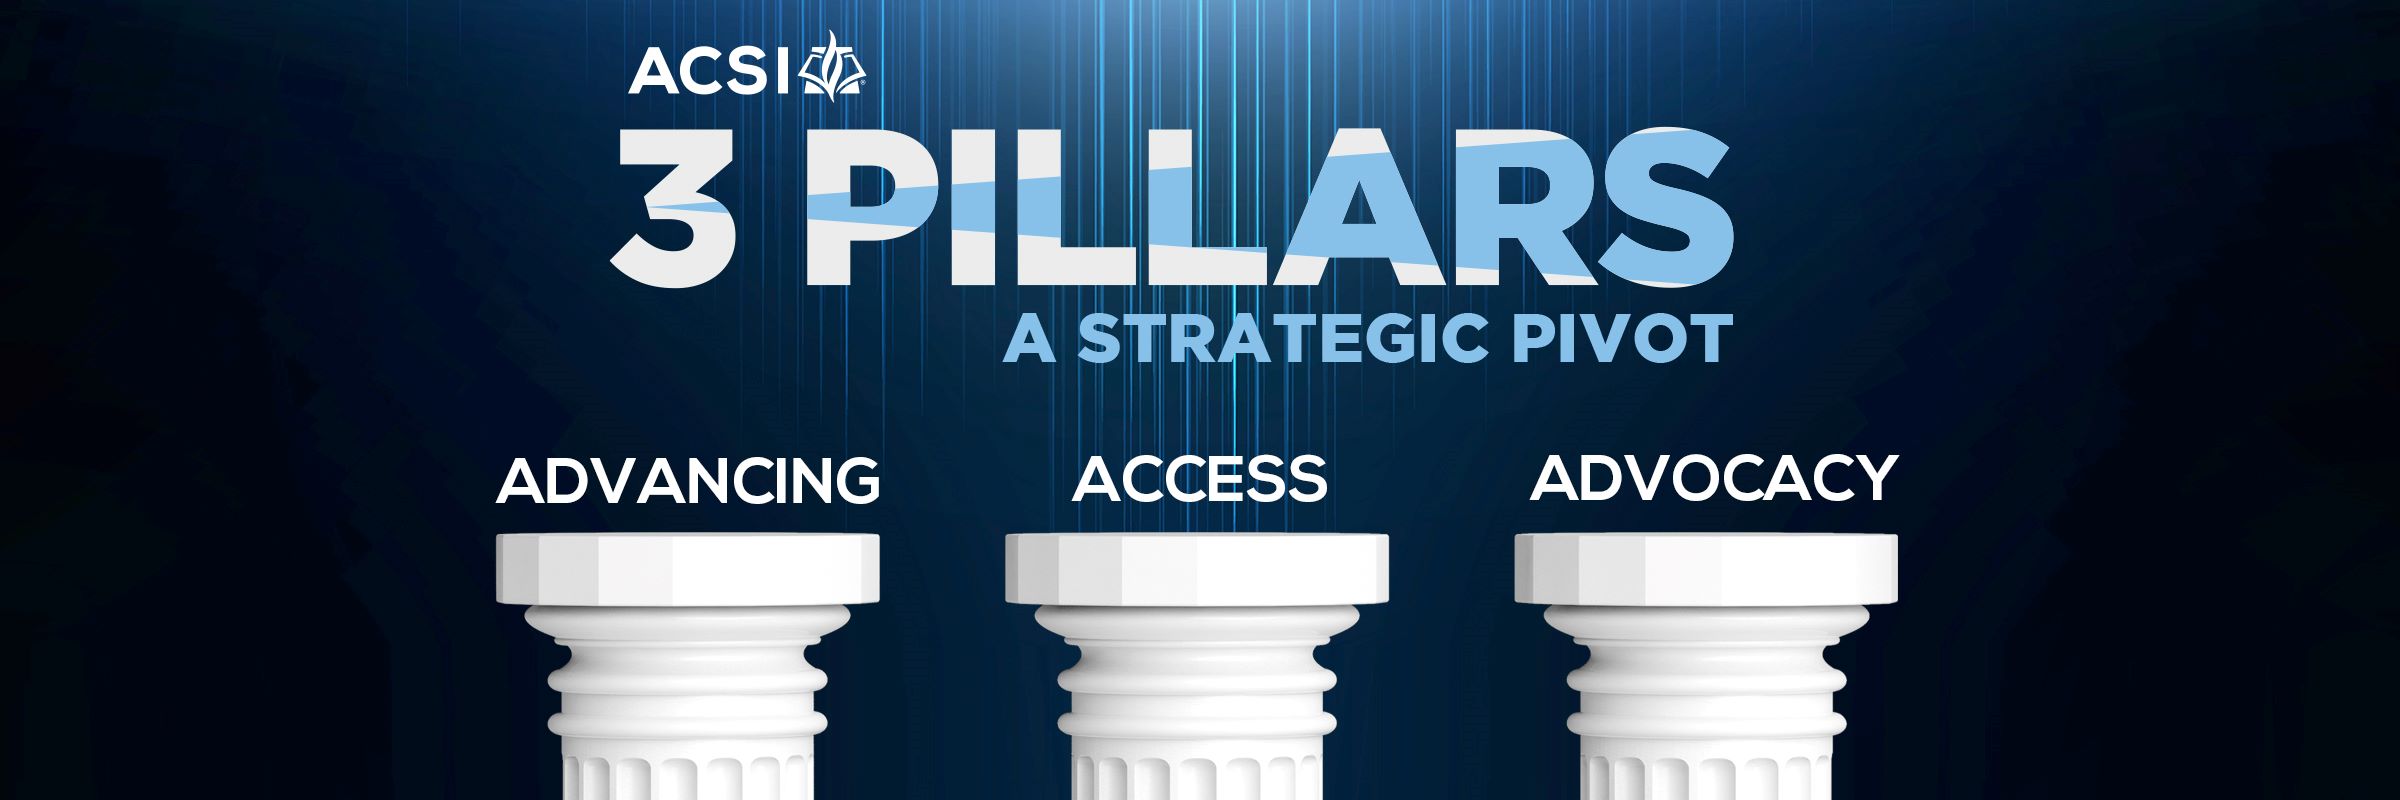 3 Pillars